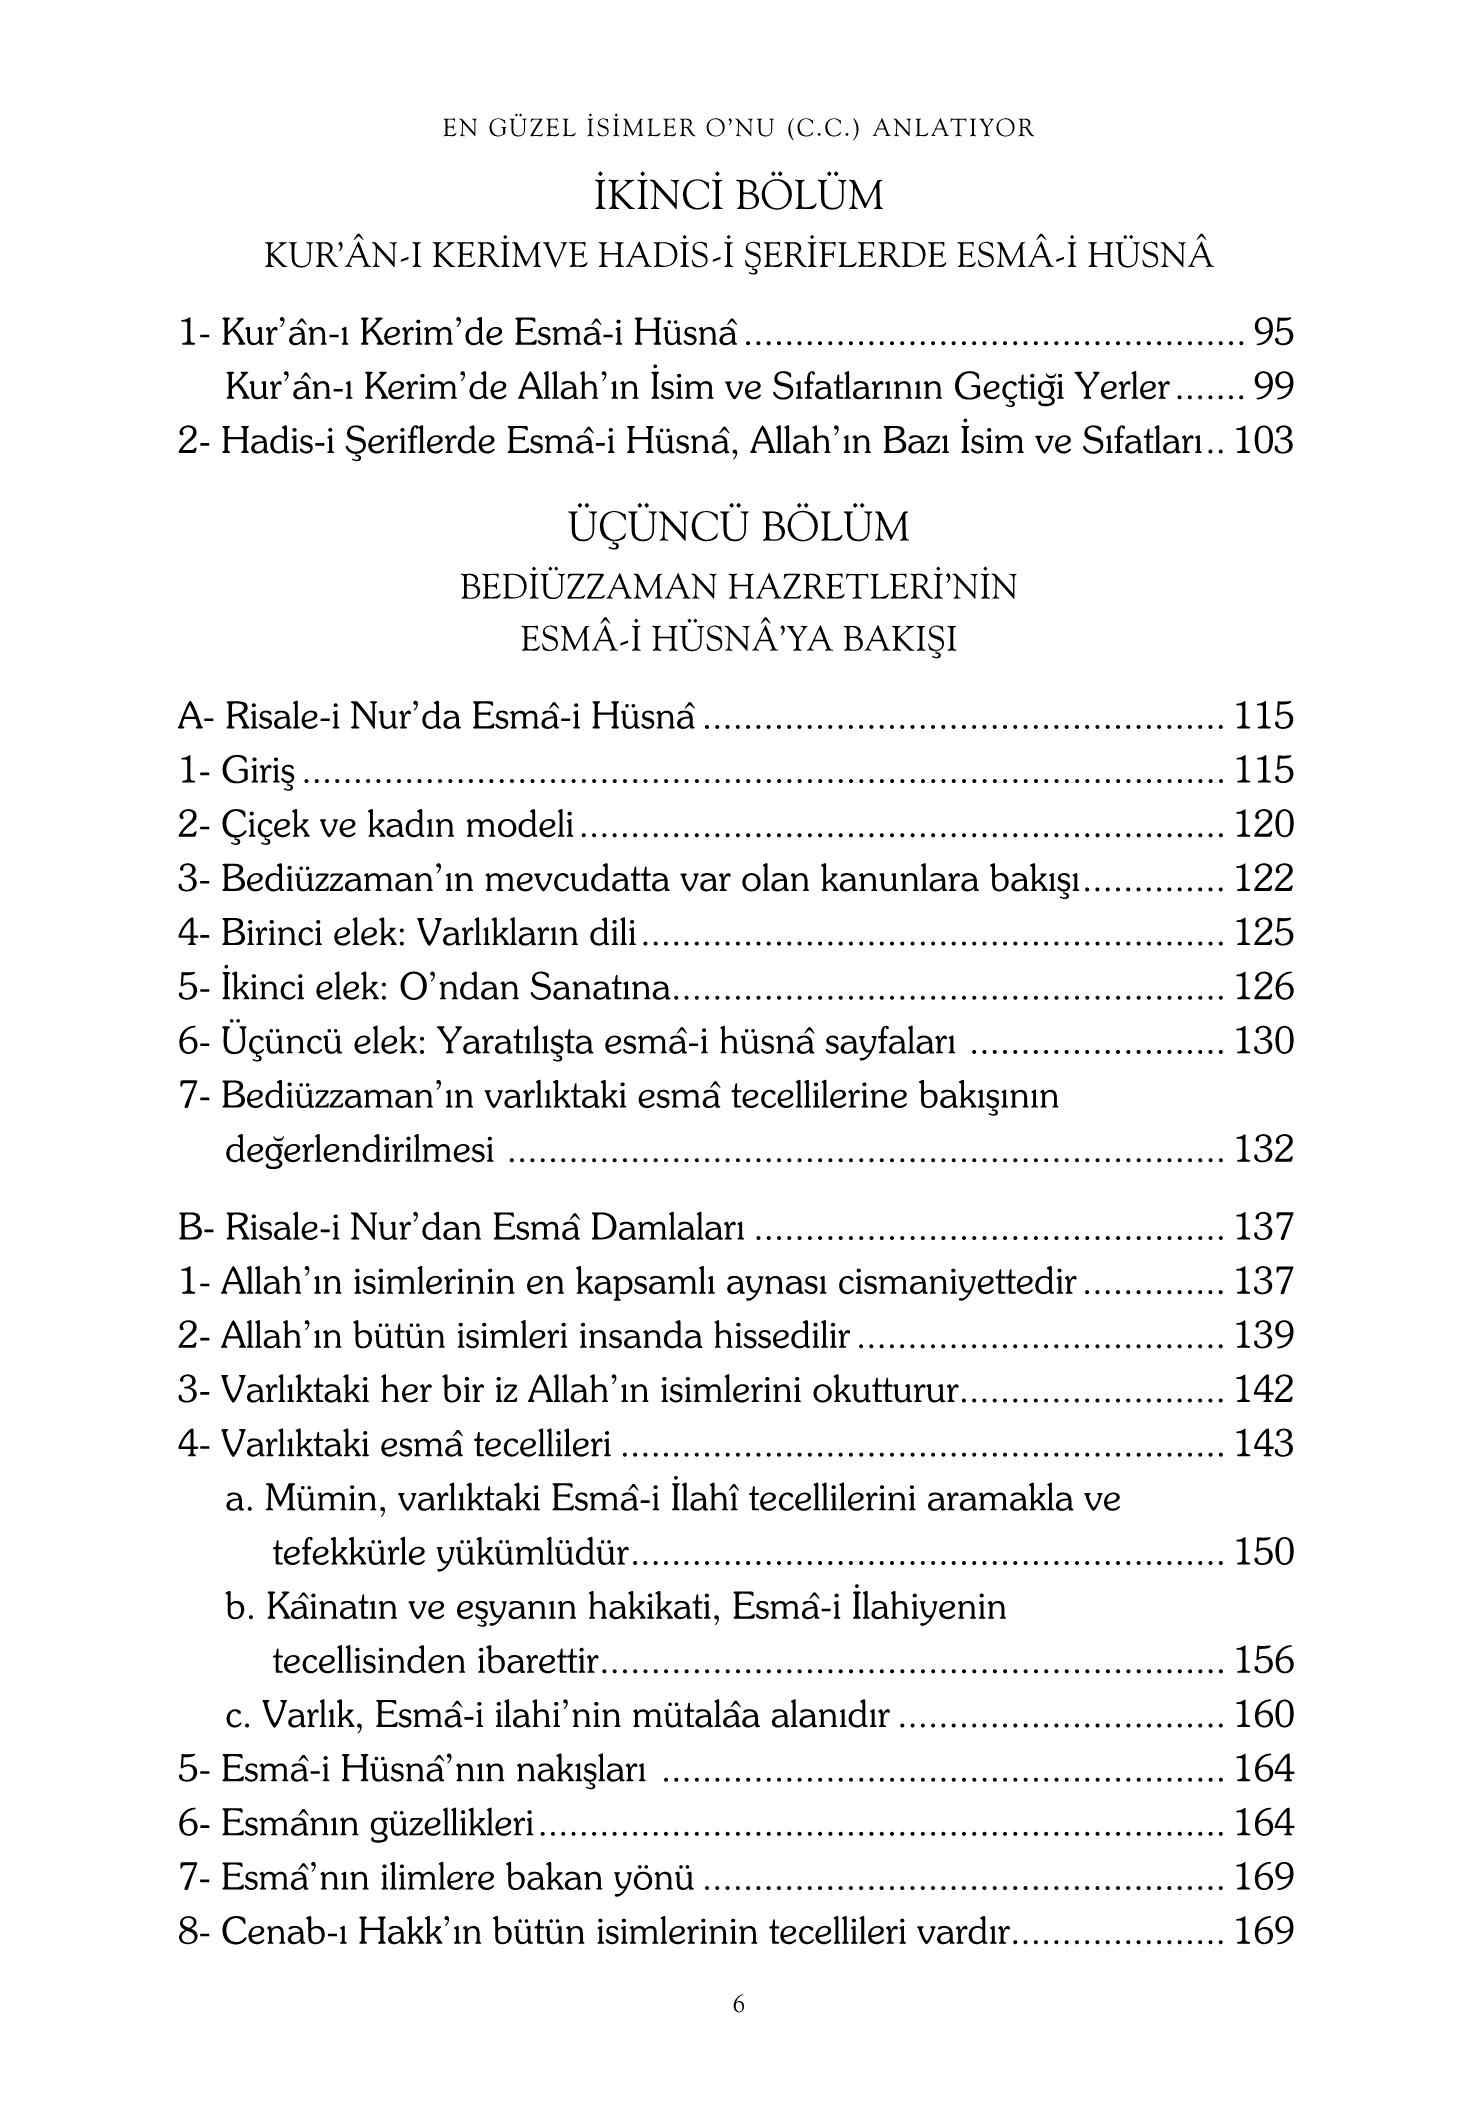 Suleyman Bosnali - En Güzel Isimler Onu Anlatiyor - RehberYayinlari.pdf, 217-Sayfa 